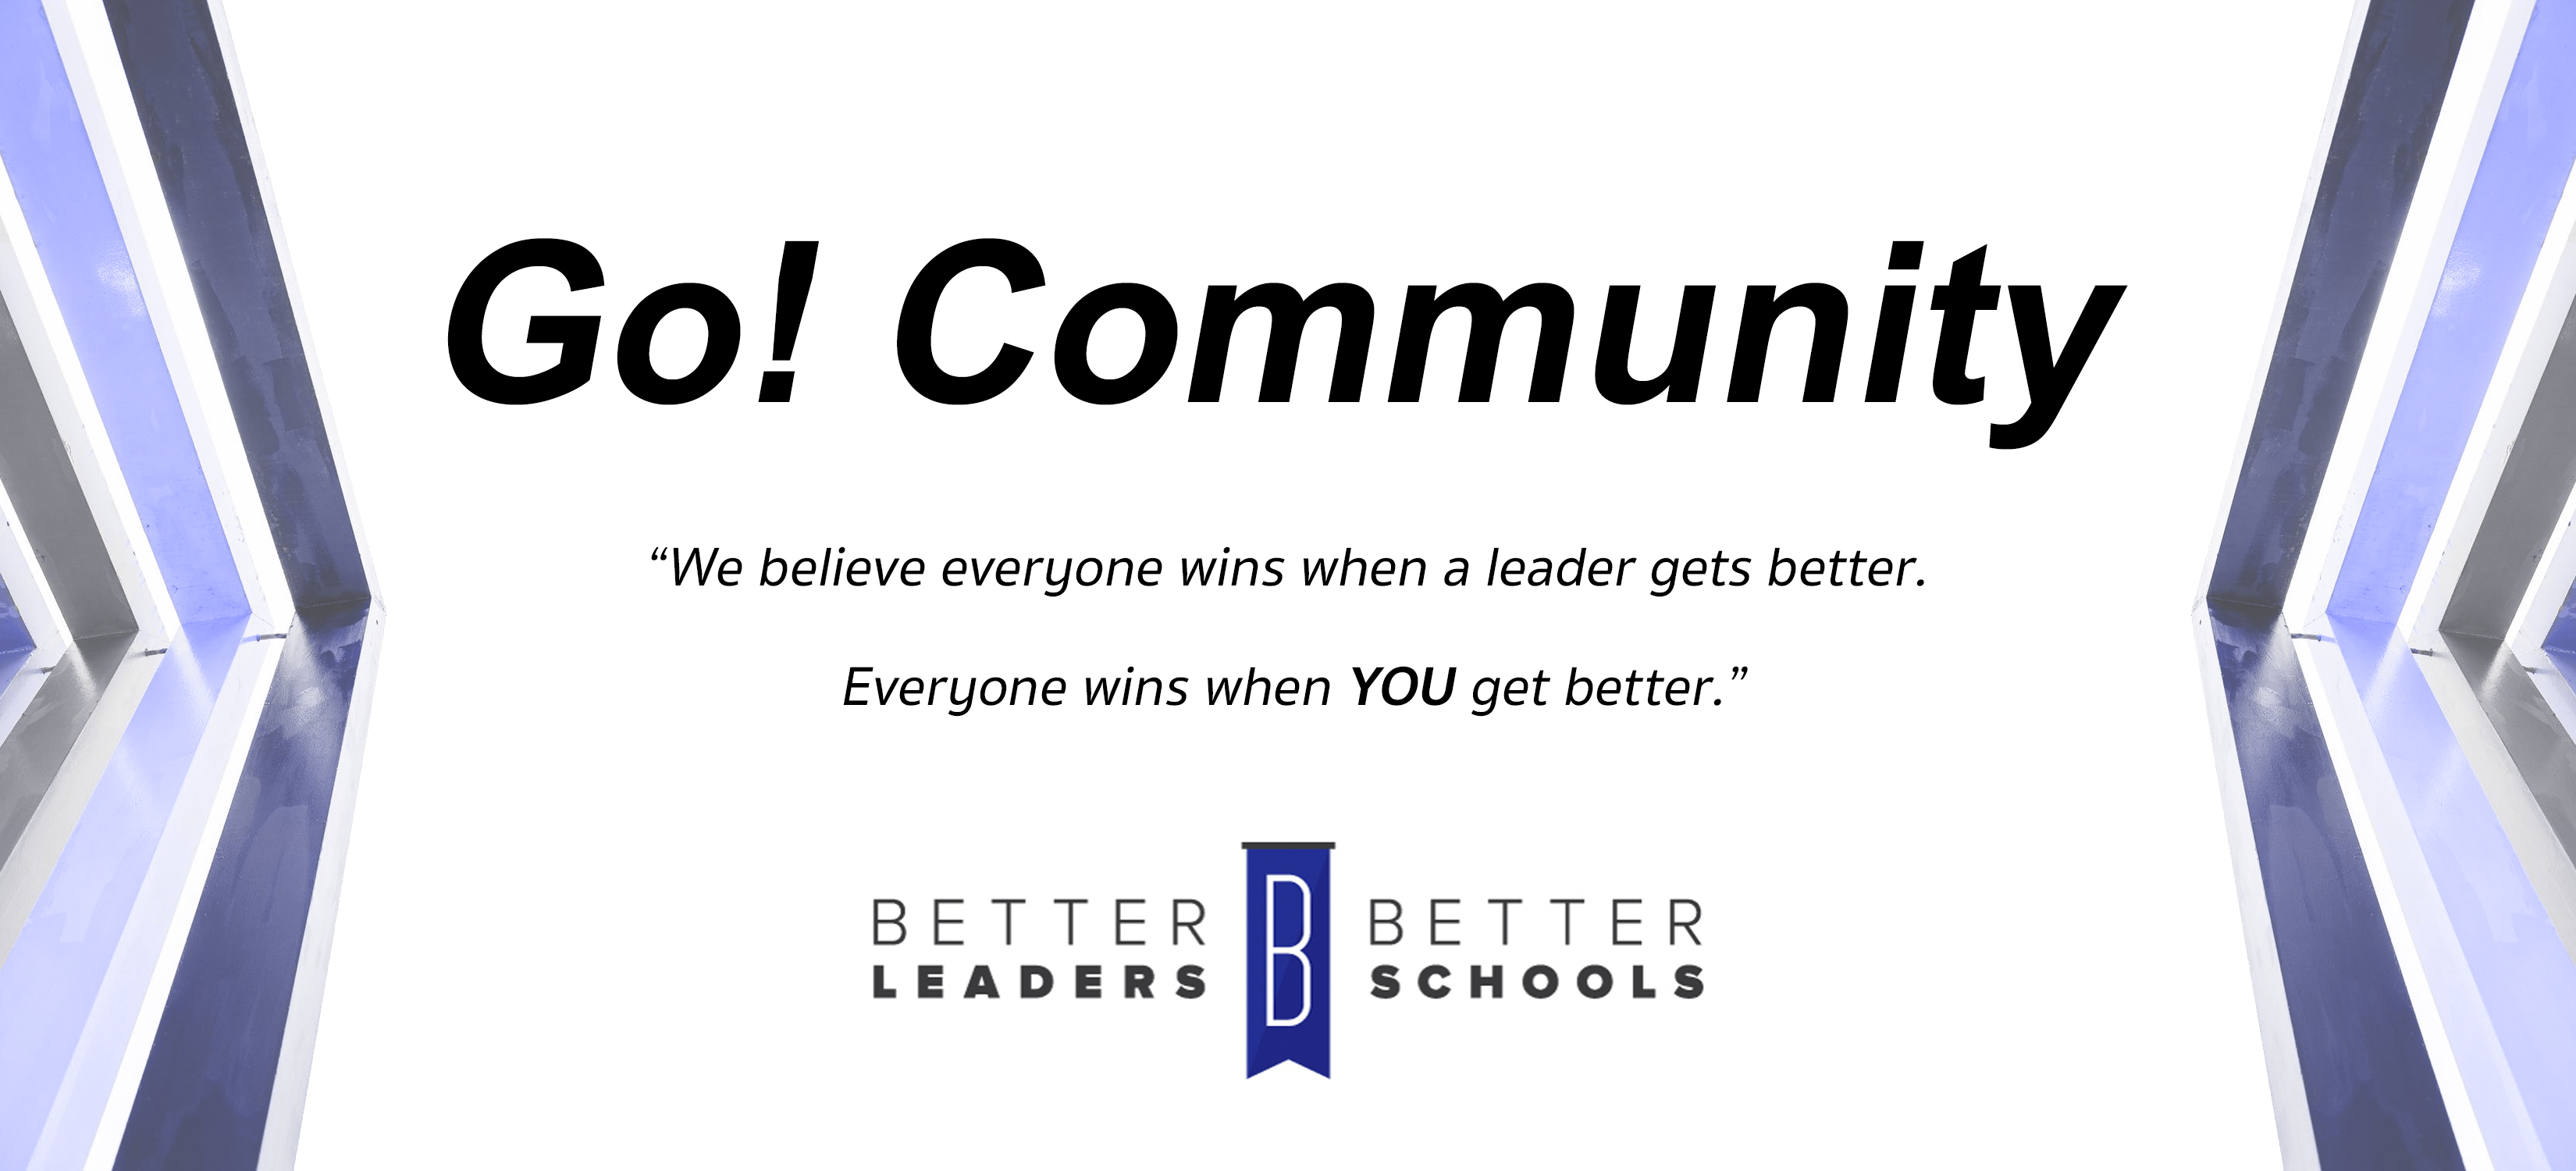 Better Leaders Better Schools